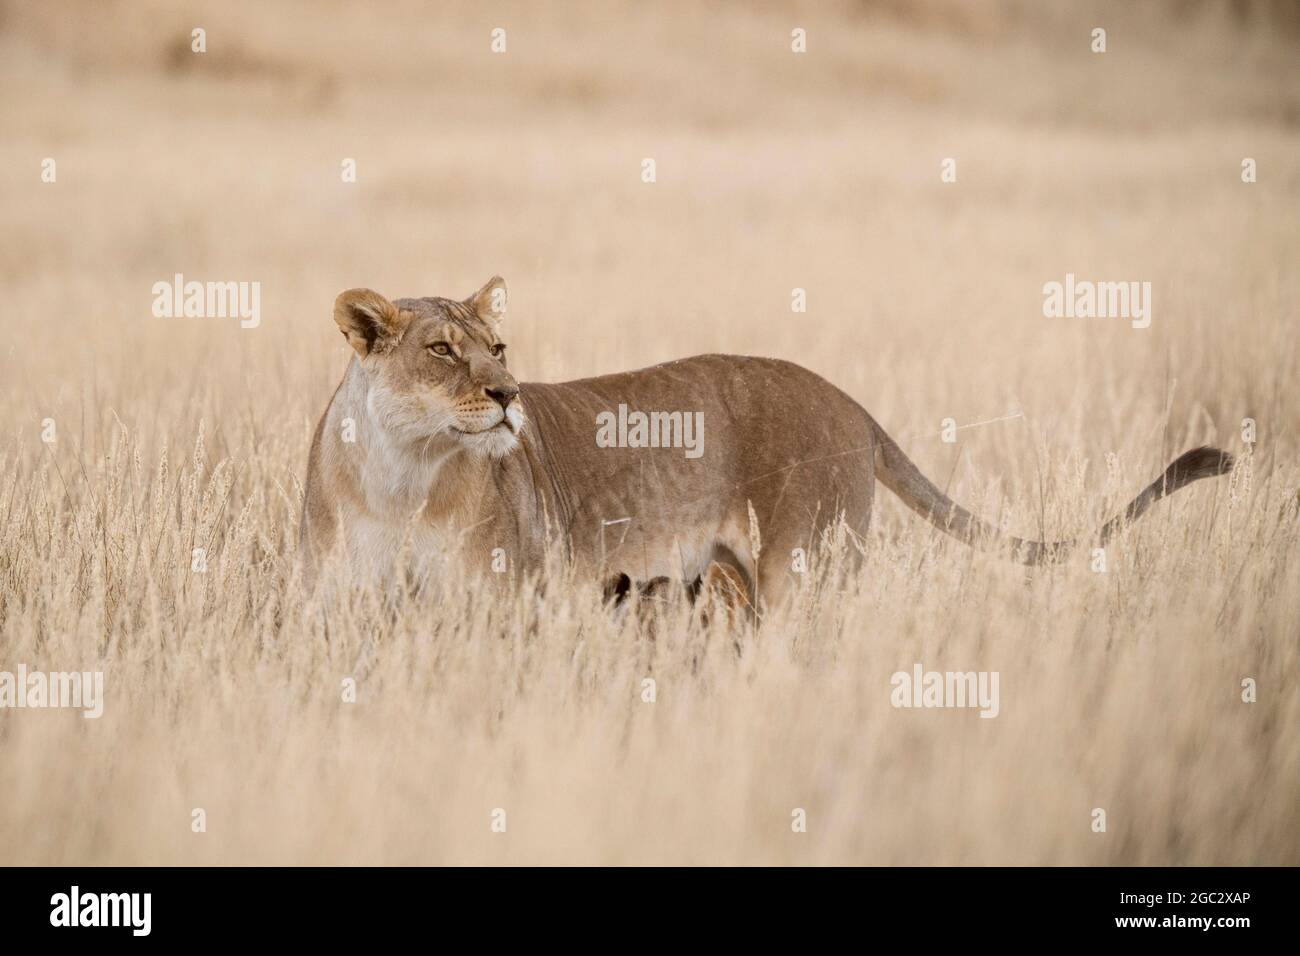 León en la hierba, Panthera leo, Parque Transfronterizo Kgalagadi, Sudáfrica Foto de stock